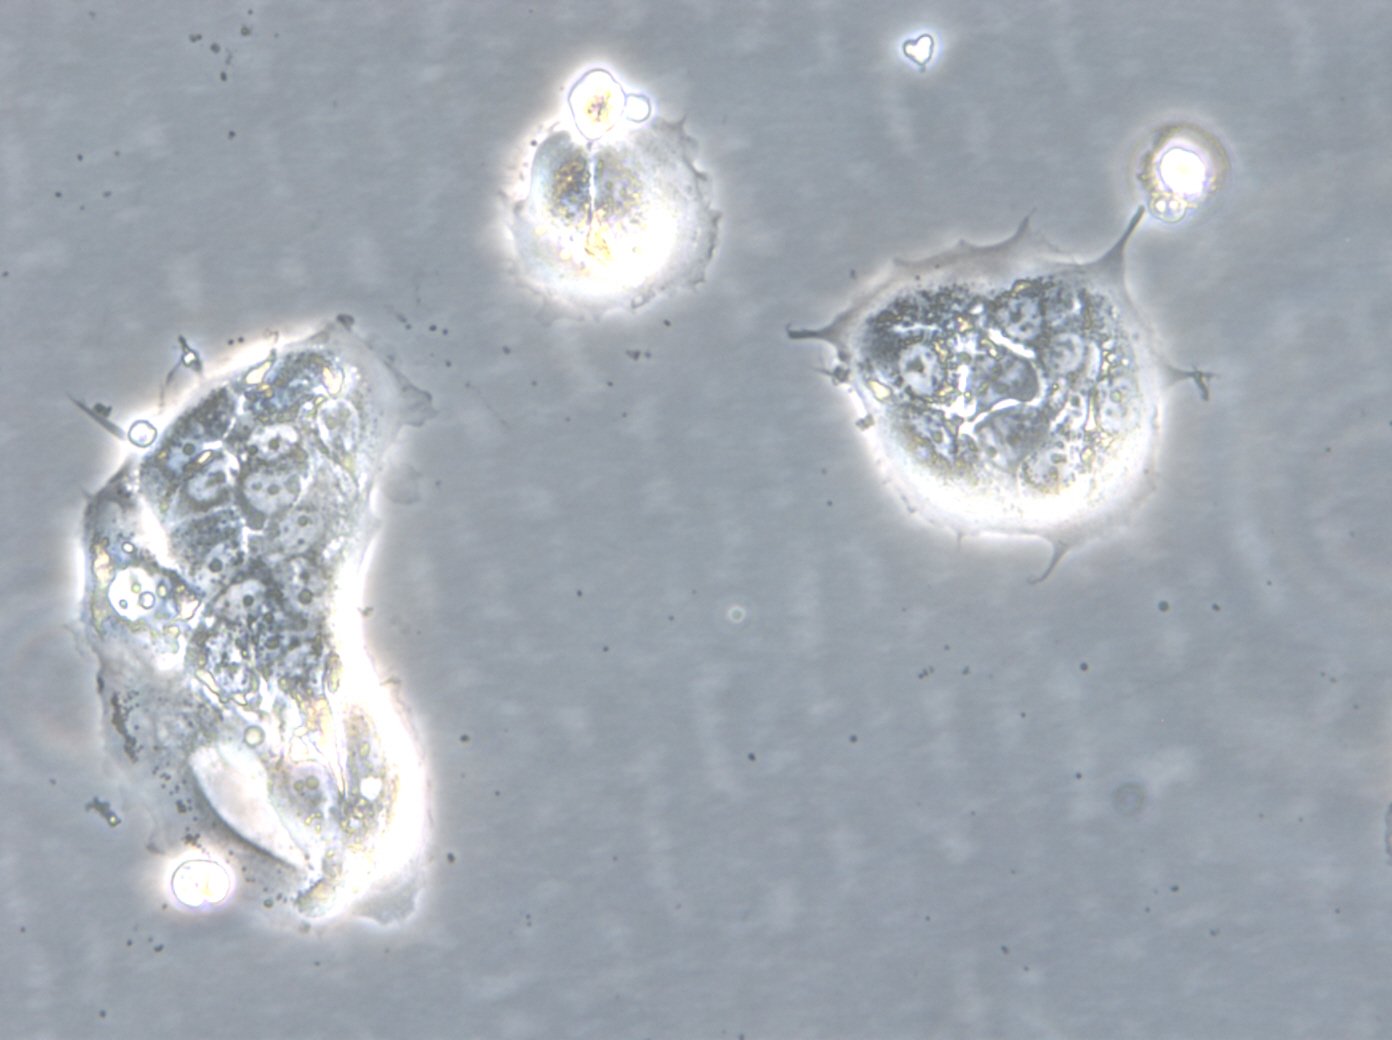 HROC103 T0 M1 Cells